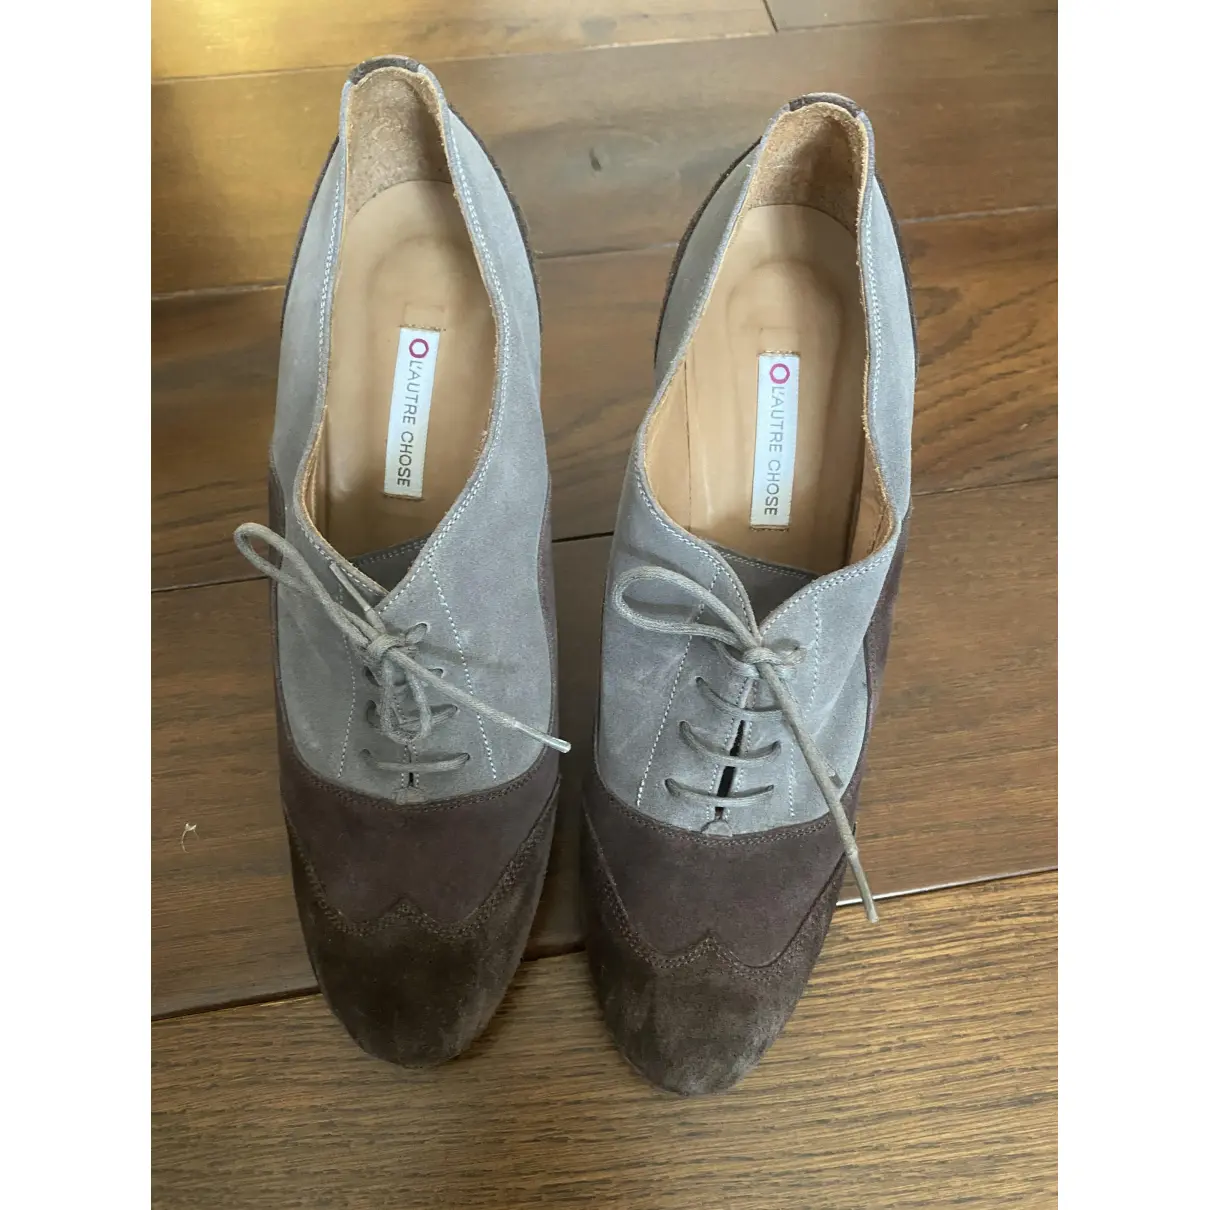 Buy L'AUTRE CHOSE Heels online